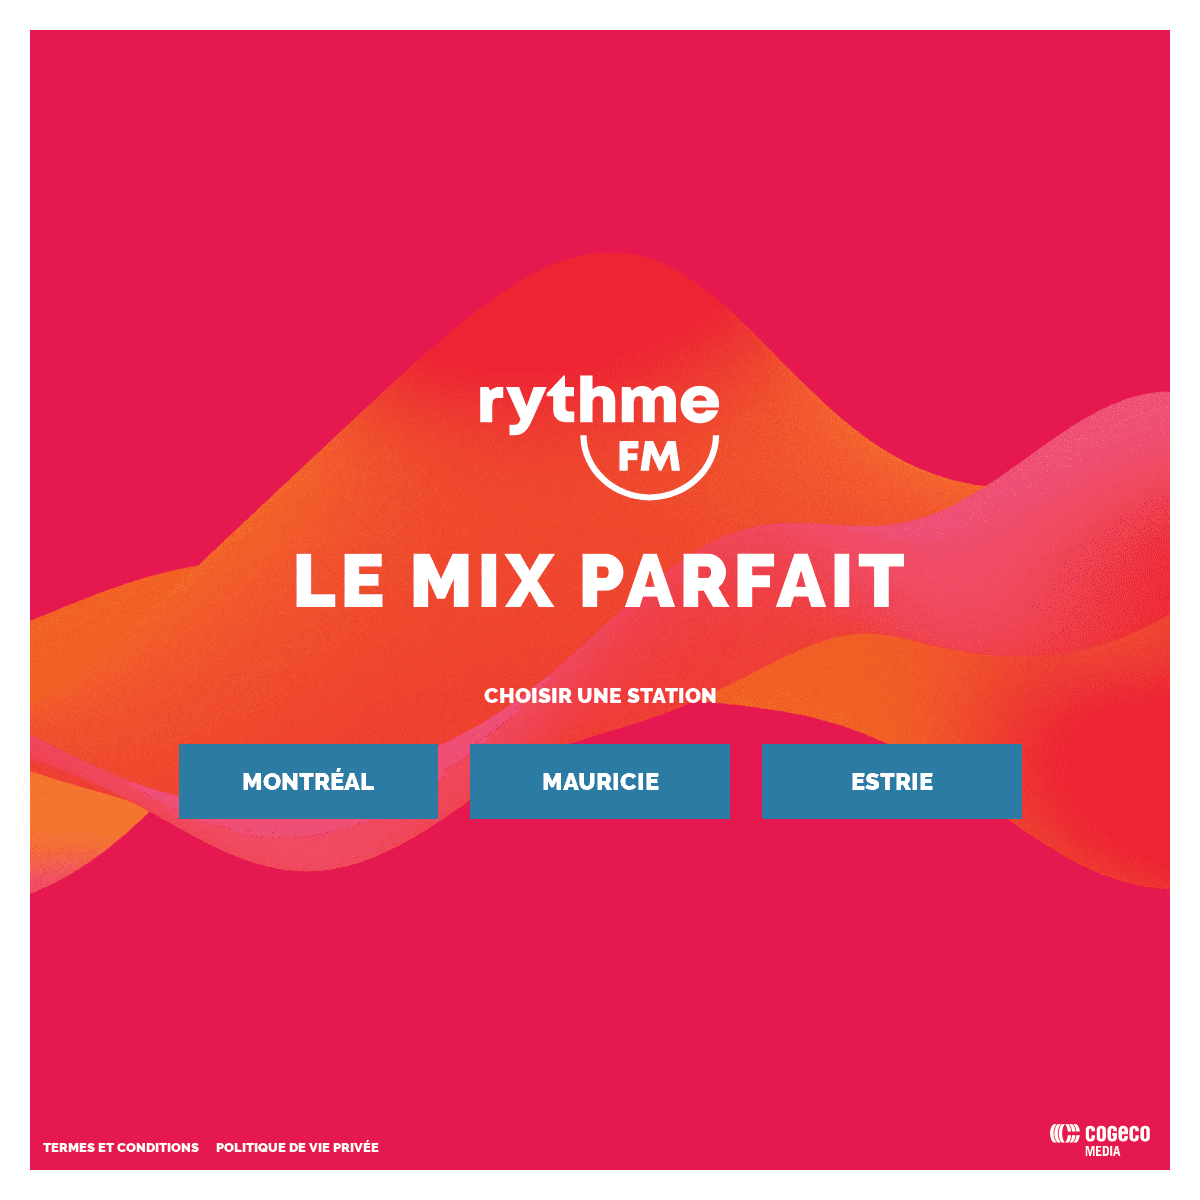 Rythme FM | Le mix parfait